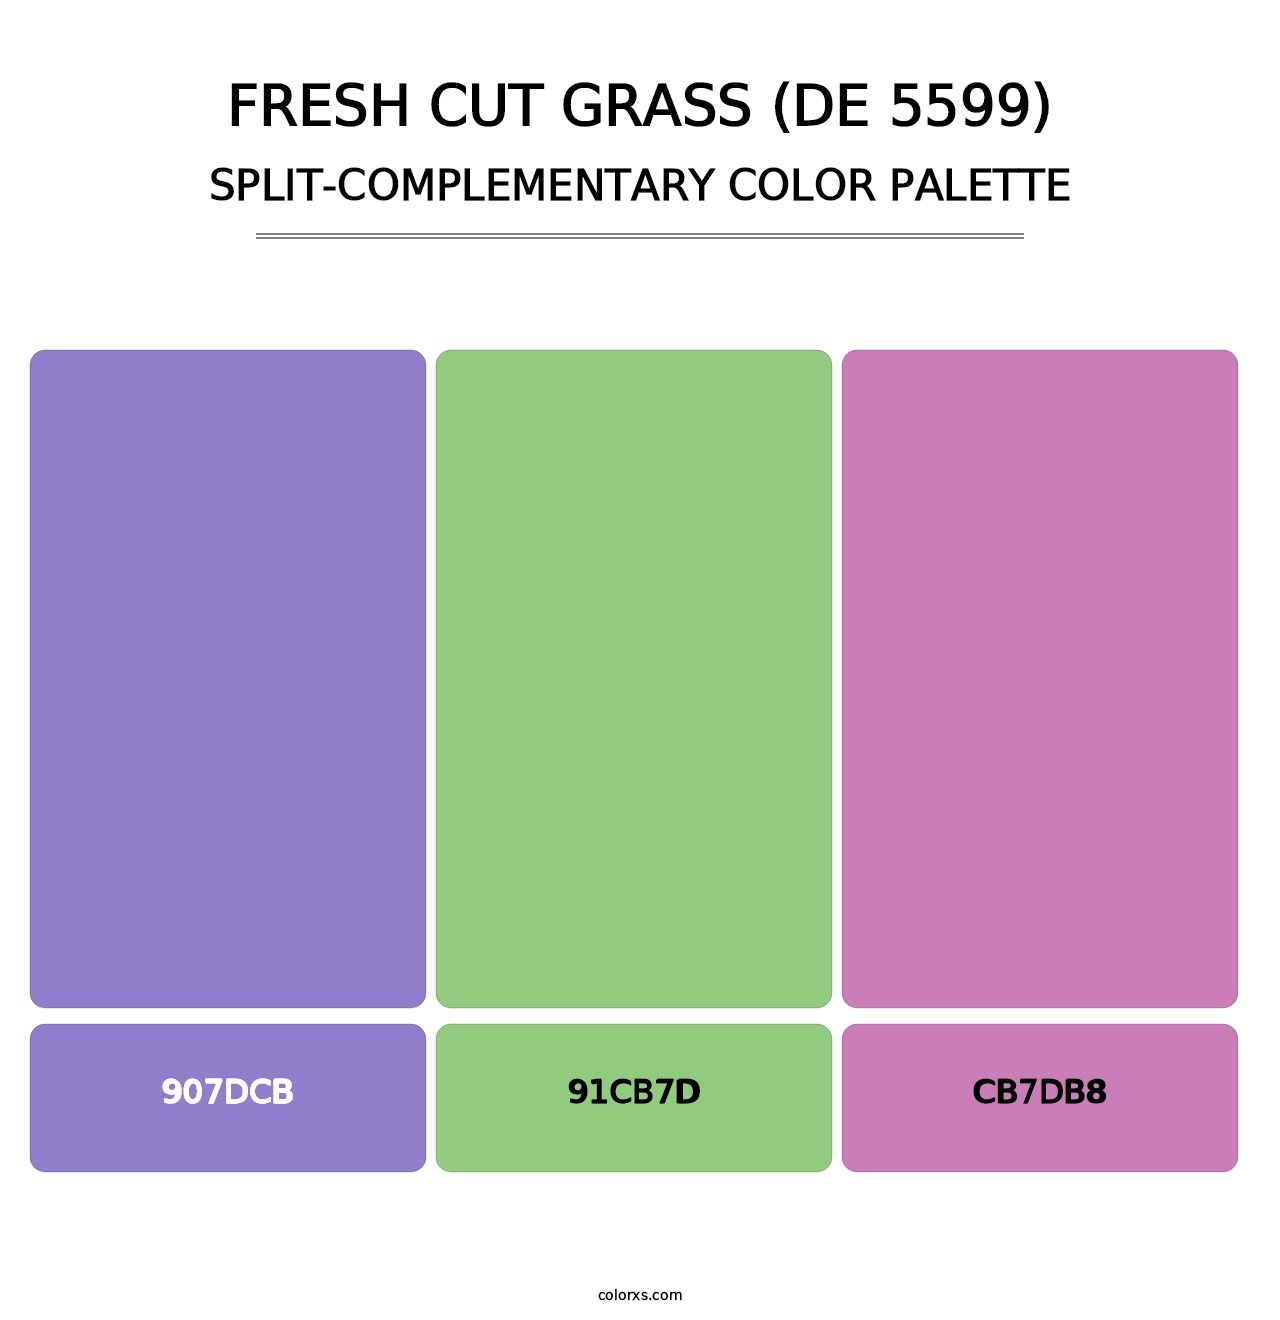 Fresh Cut Grass (DE 5599) - Split-Complementary Color Palette